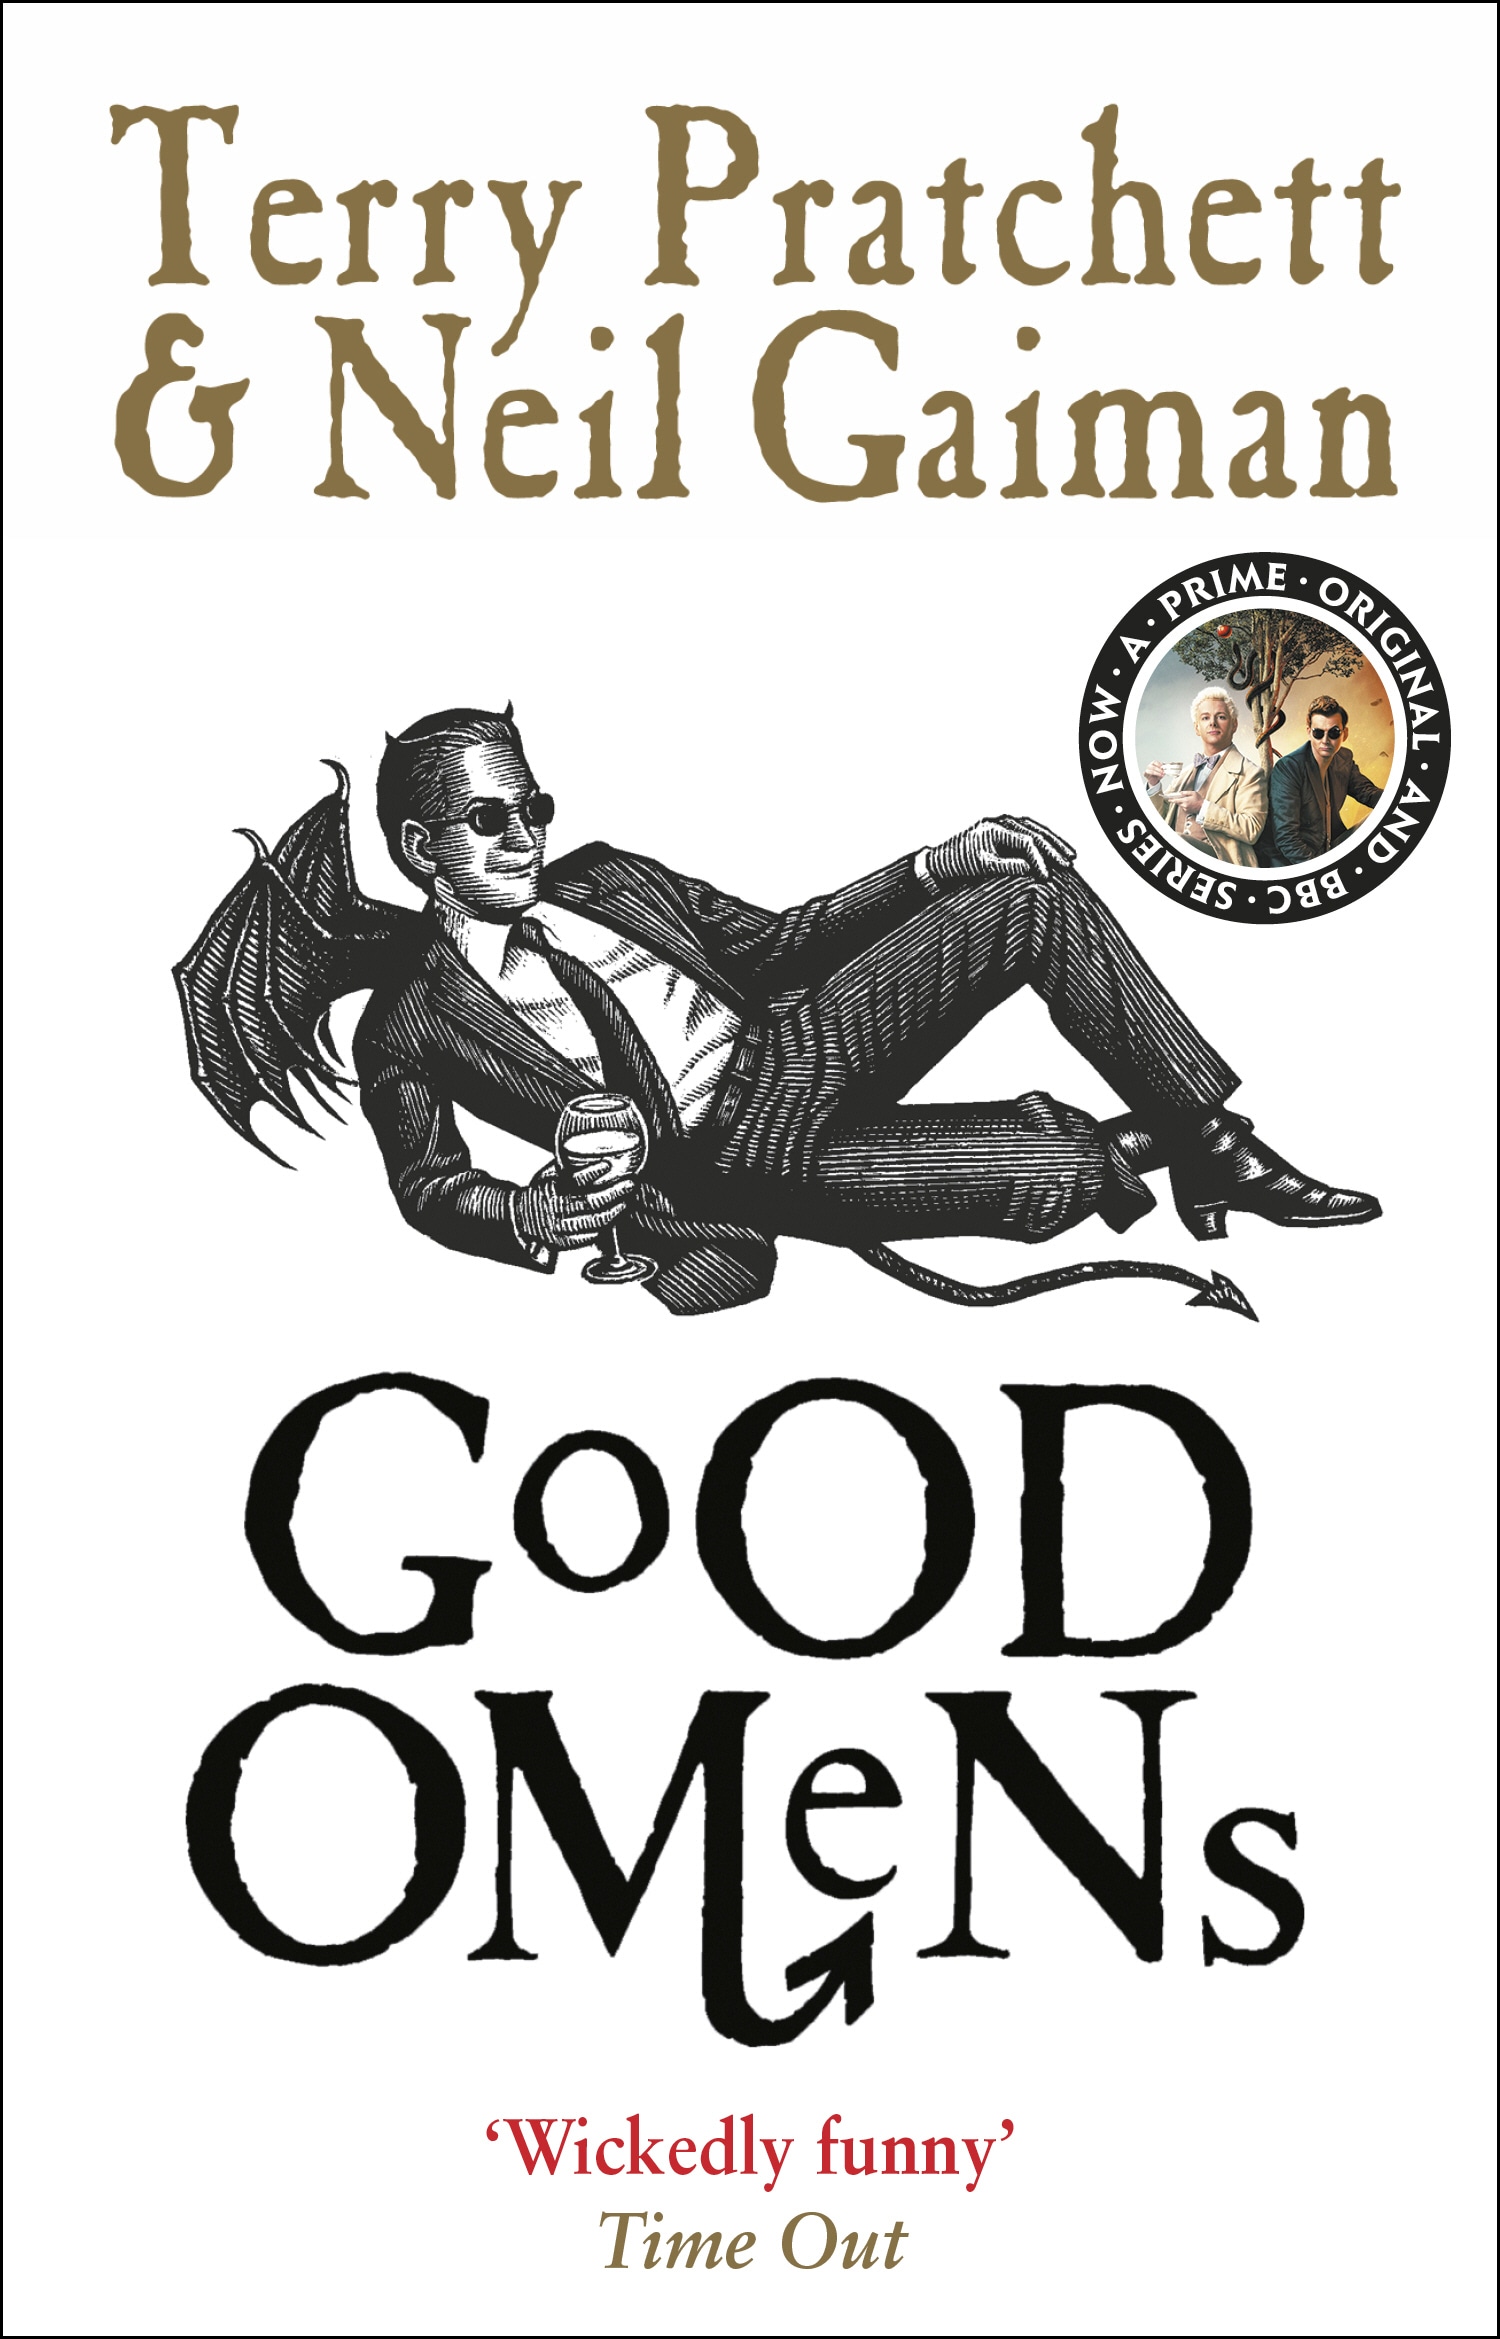 Book “Good Omens” by Neil Gaiman, Terry Pratchett — December 11, 2014